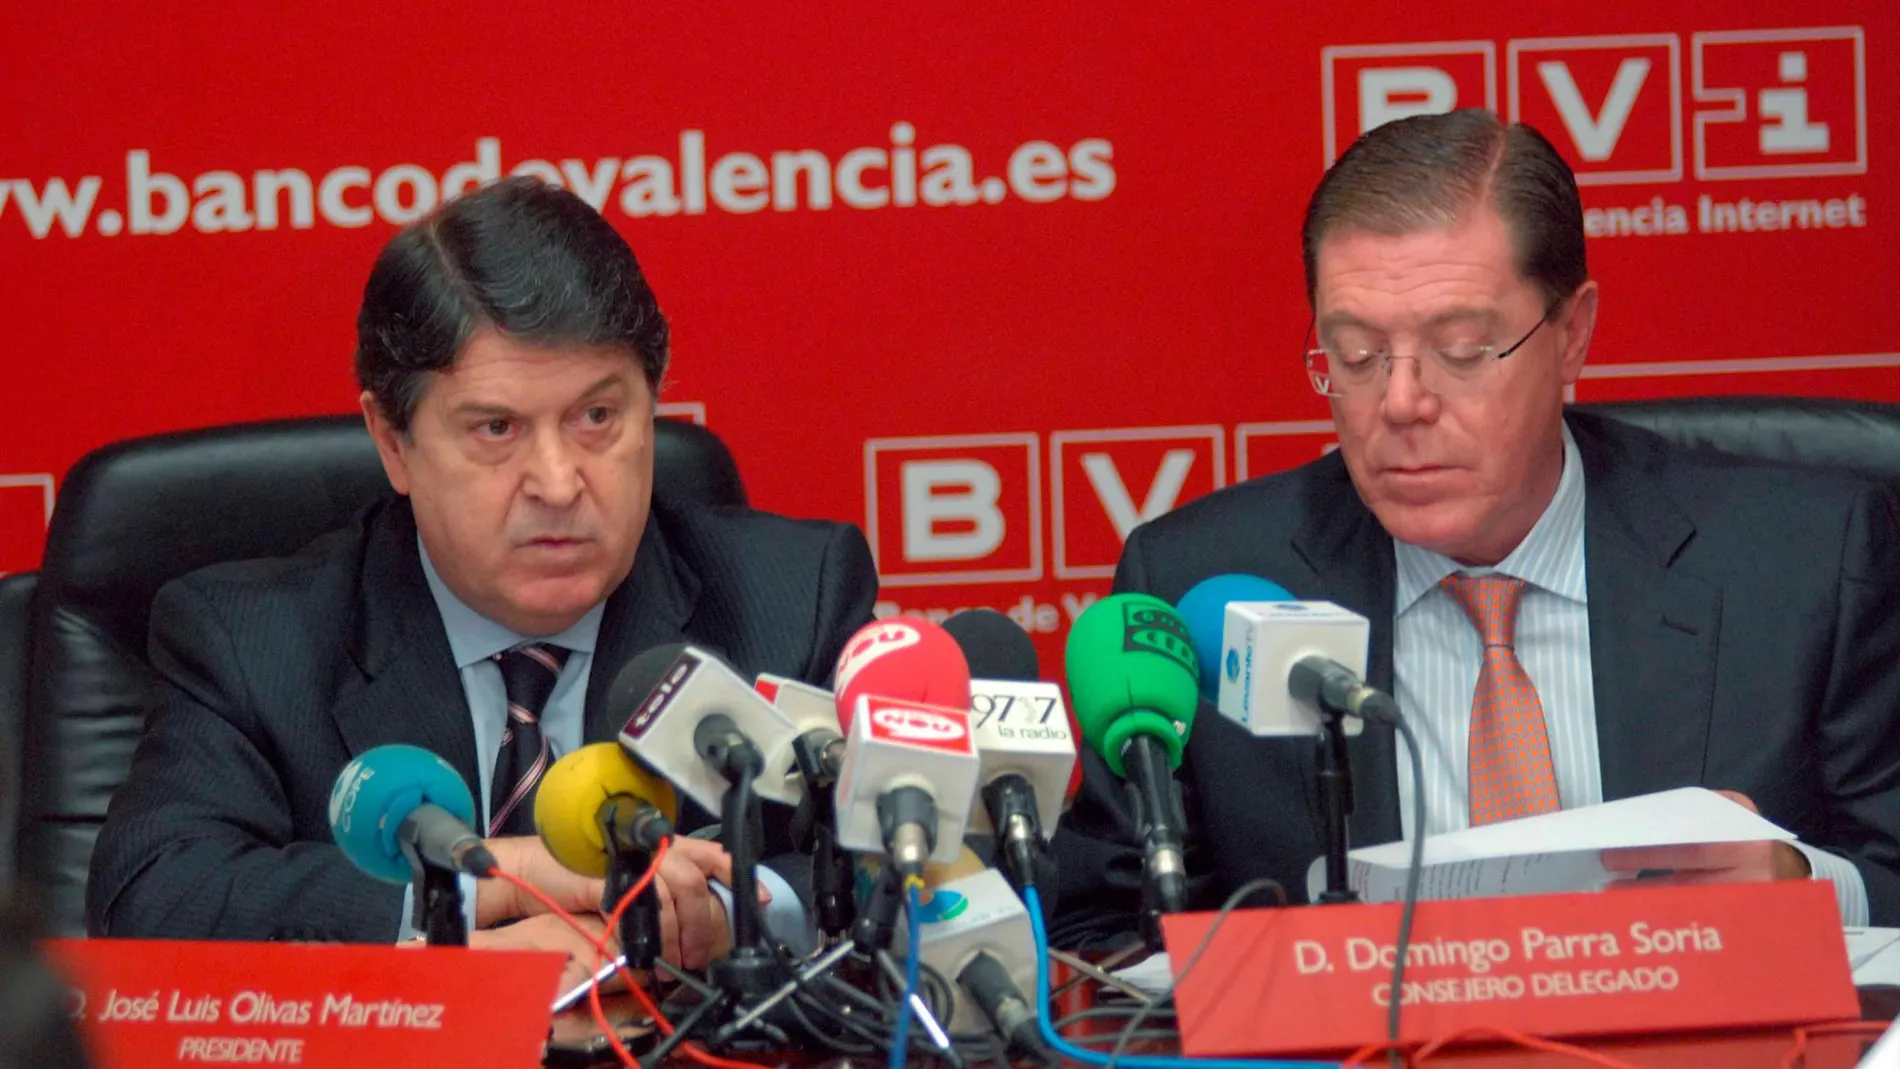 El expresidente de Banco de Valencia, Jose Luis Olivas, junto a Domingo Parra, exconsejero delegado de la entidad